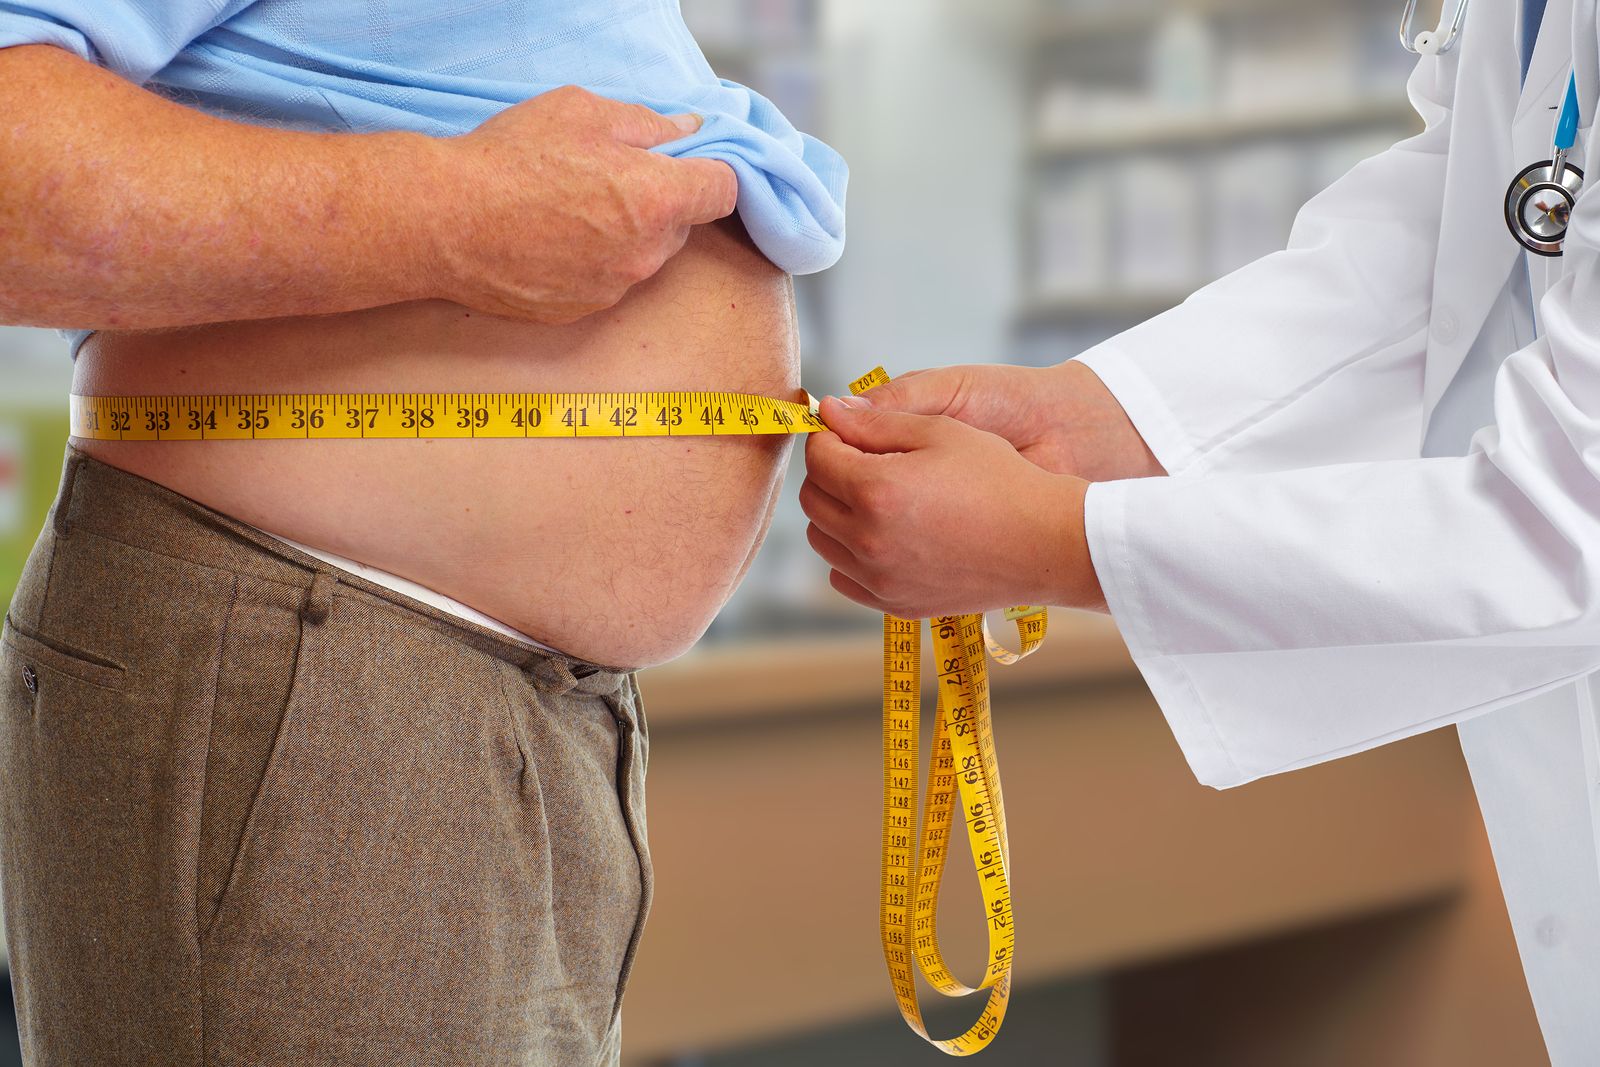 Los cambios de peso podrían aumentar el riesgo de cáncer